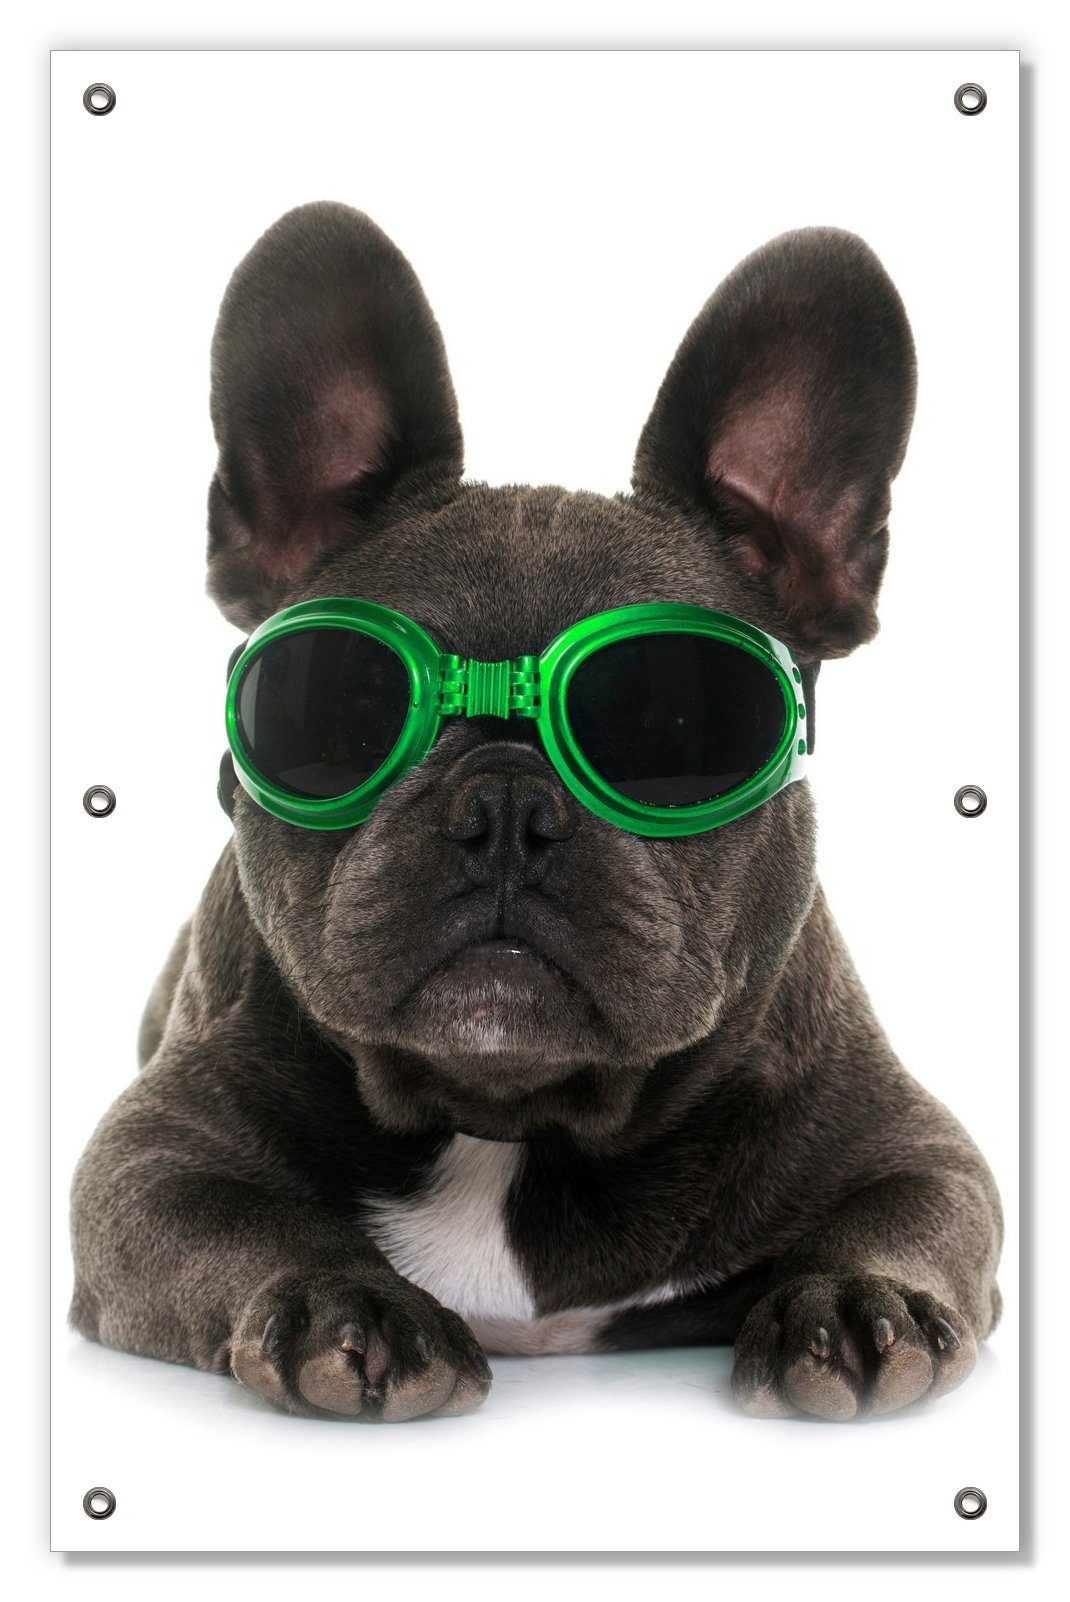 Sonnenschutz Cooler Hund mit Sonnenbrille in Saugnäpfen, wiederablösbar blickdicht, Französische wiederverwendbar - grün und mit Wallario, Bulldogge